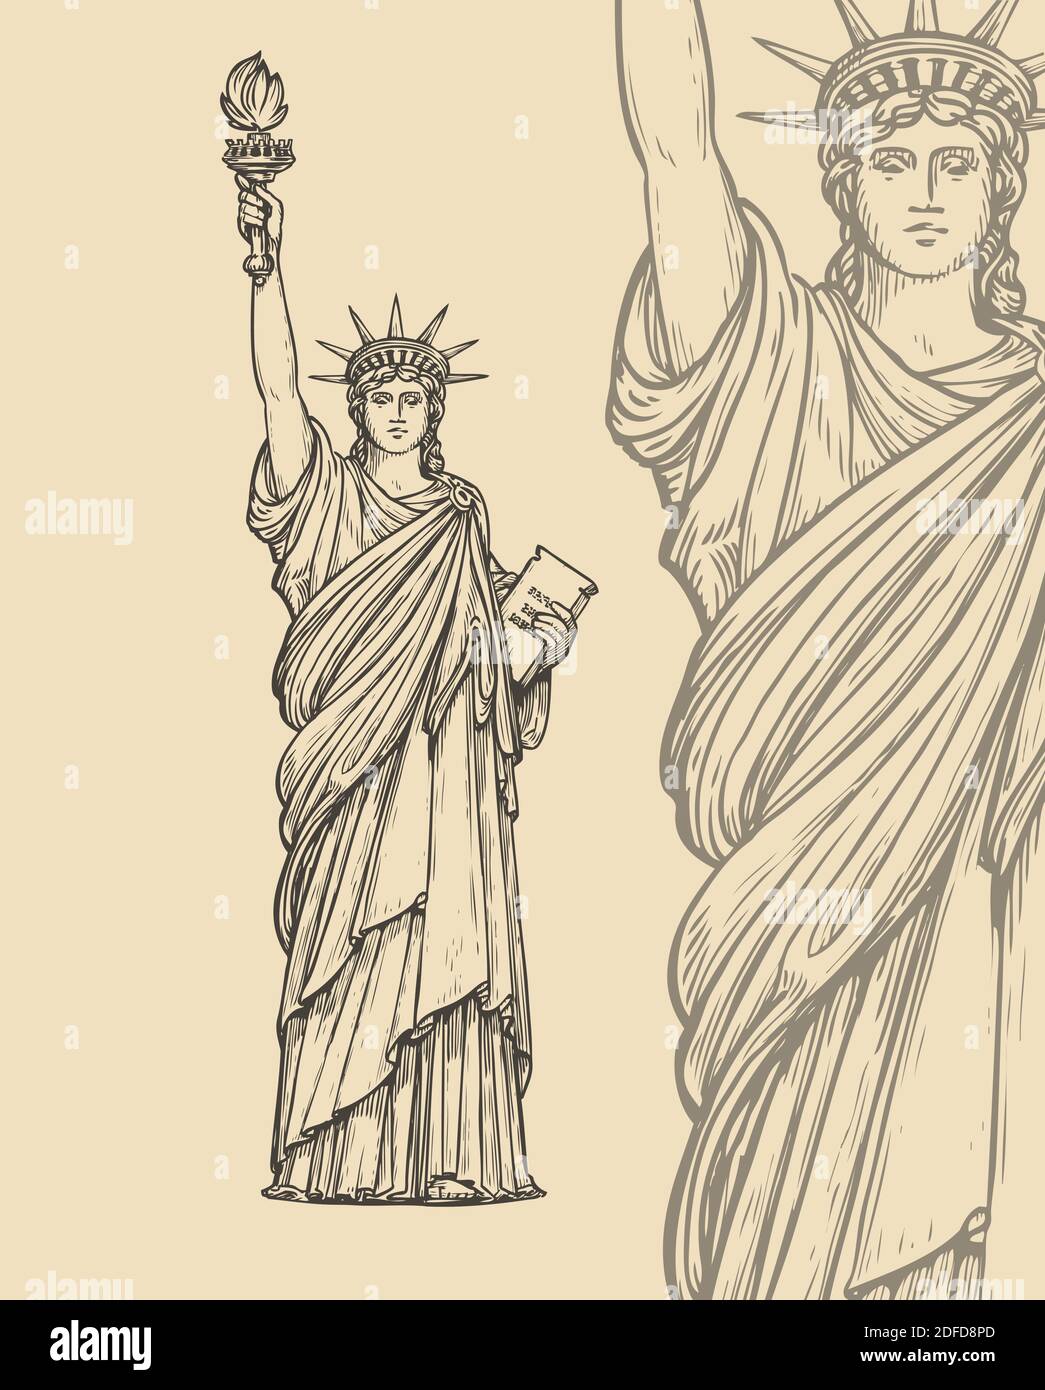 Croquis de la Statue de la liberté. New York, USA symbole illustration vectorielle vintage Illustration de Vecteur